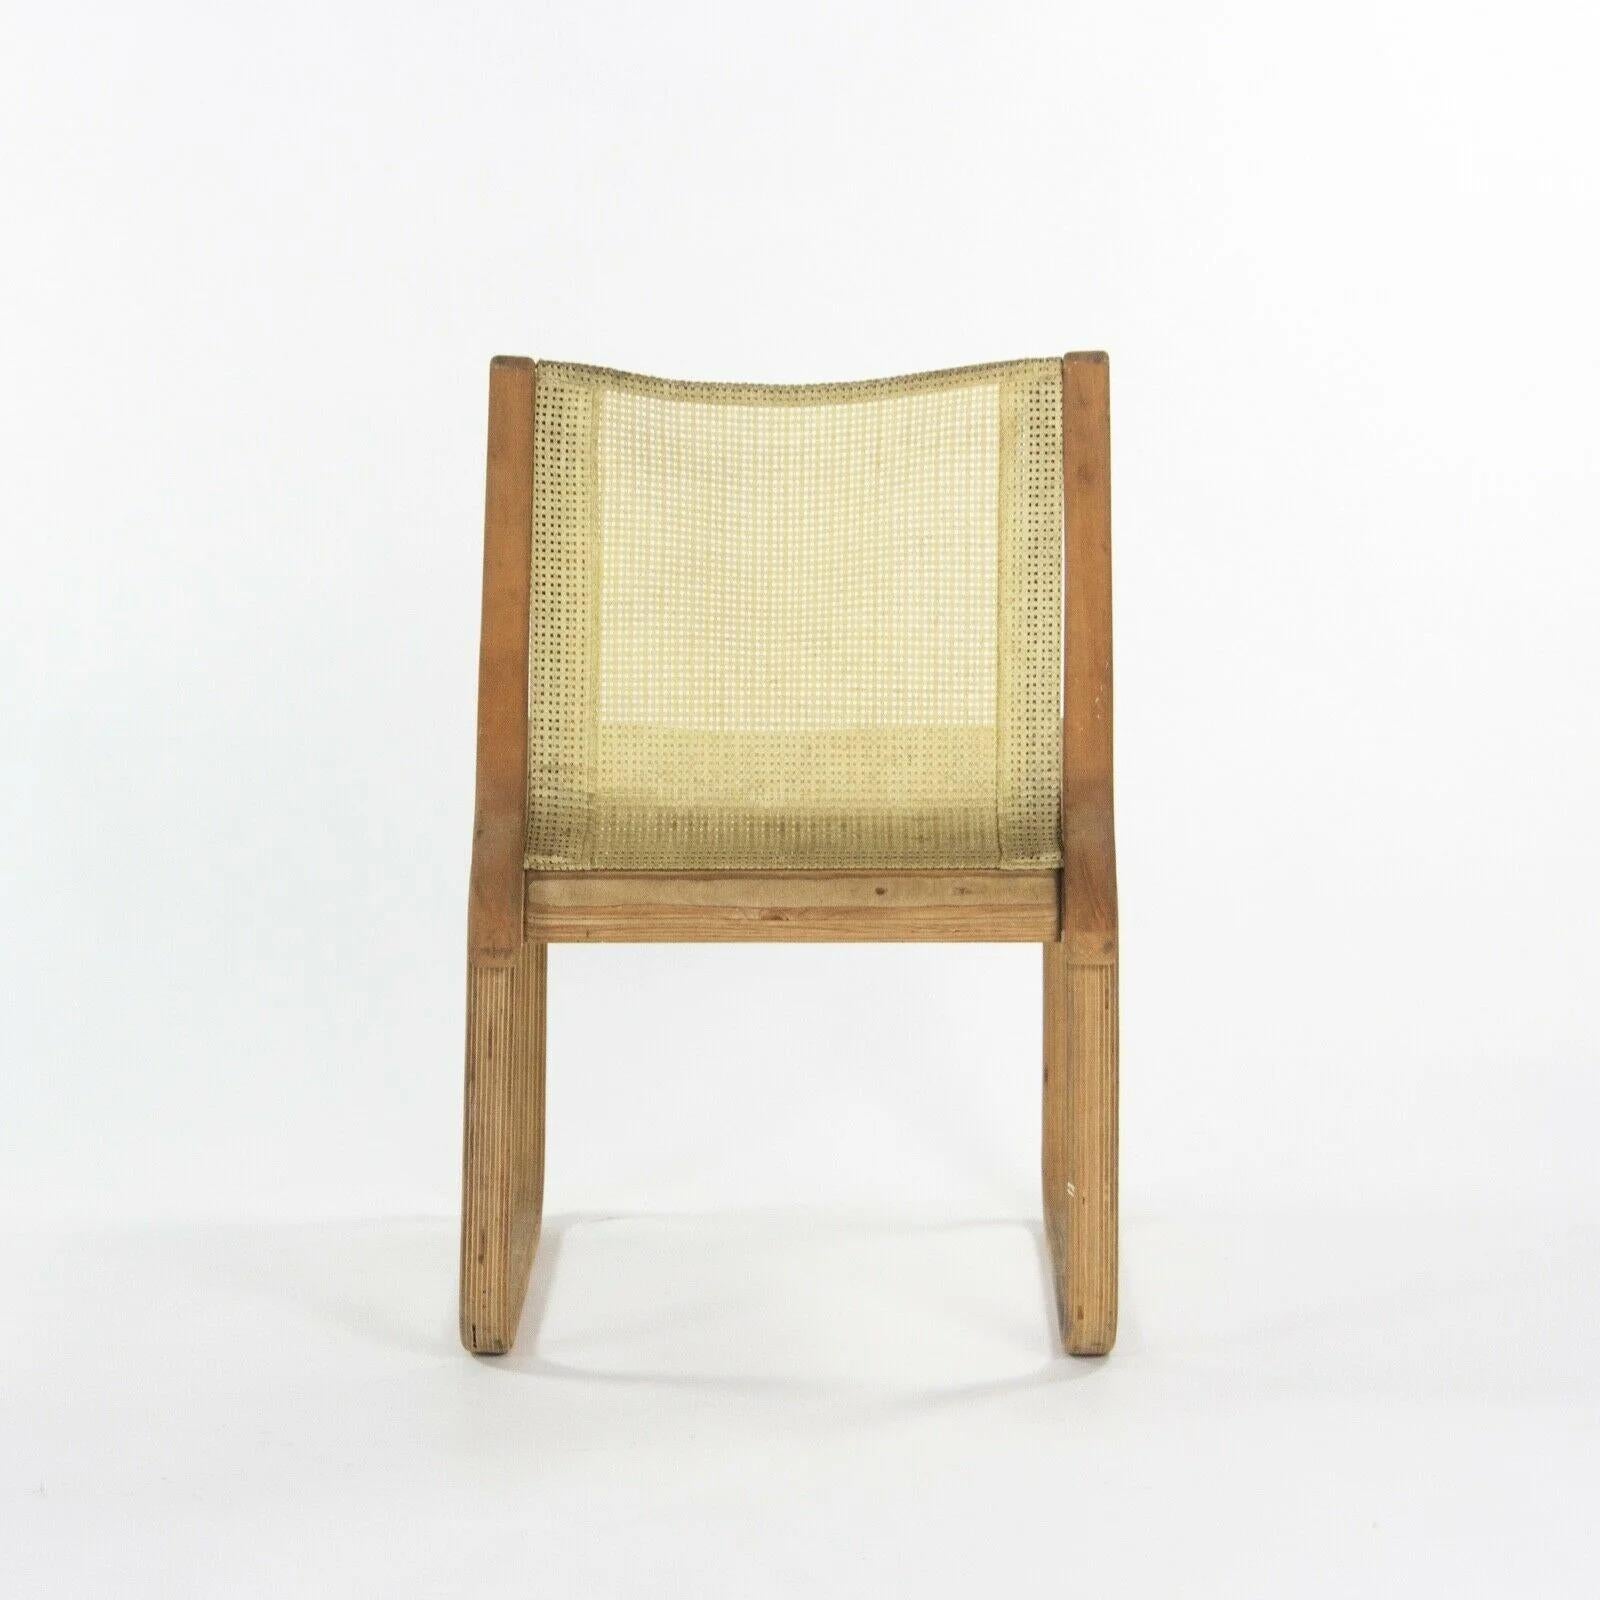 Fin du 20e siècle Prototype de chaise de salle à manger de la collection extérieure Richard Schultz en bois, 1985